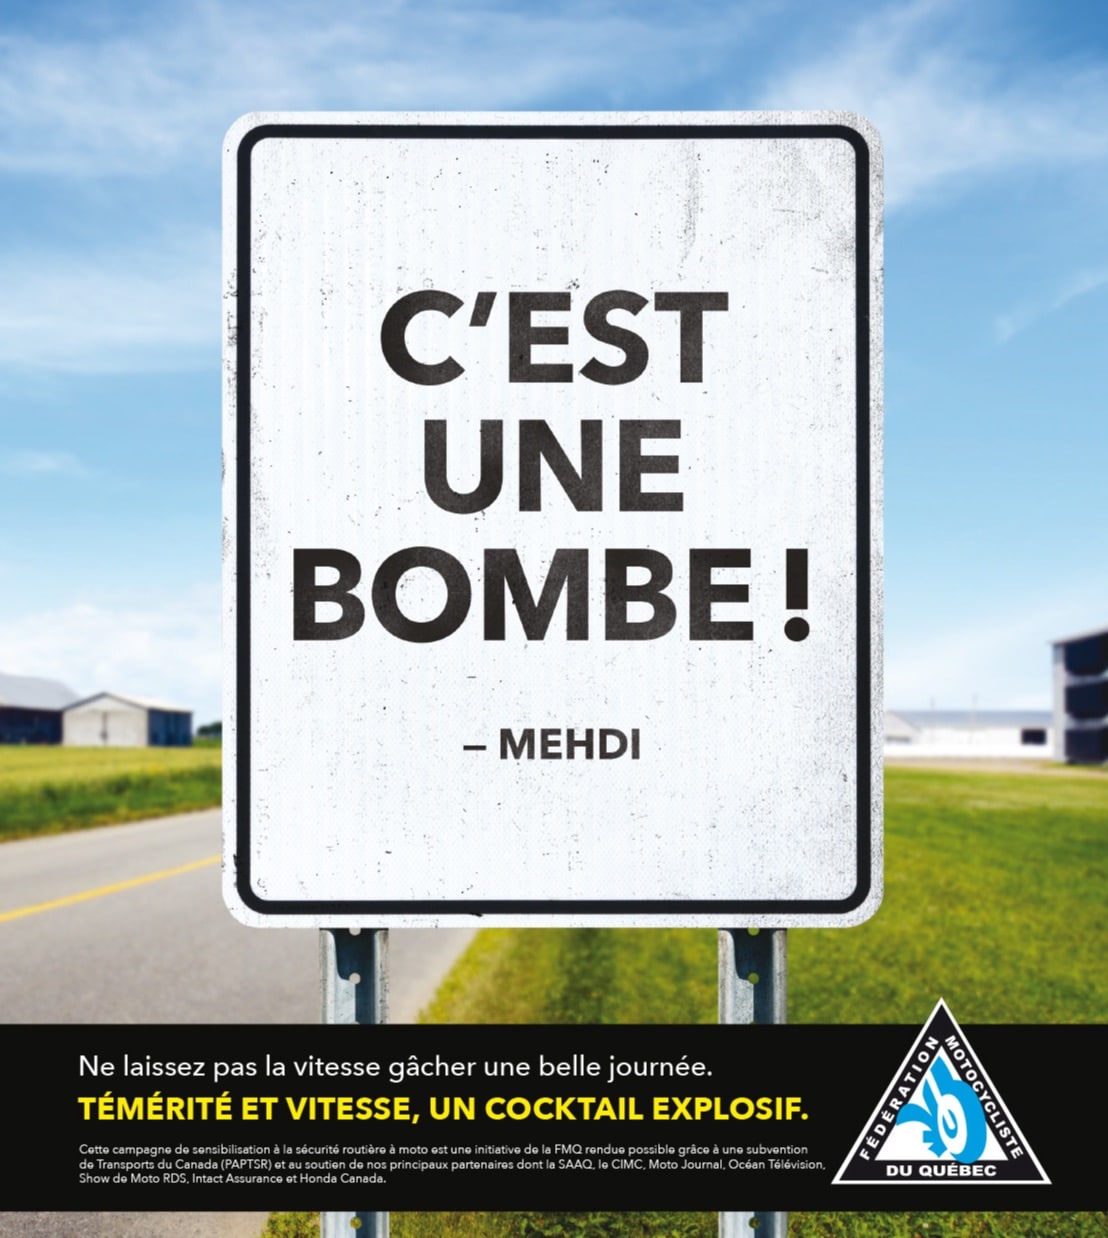 Campagne de sensibilisation pour les motocyclistes. Source: https://www.fmq.ca/en/campagne-de-sensibilisation-a-la-securite-routiere-a-moto/-ca-c-est-une-bombe-la-vitesse-et-la-moto-un-cocktail-explosif